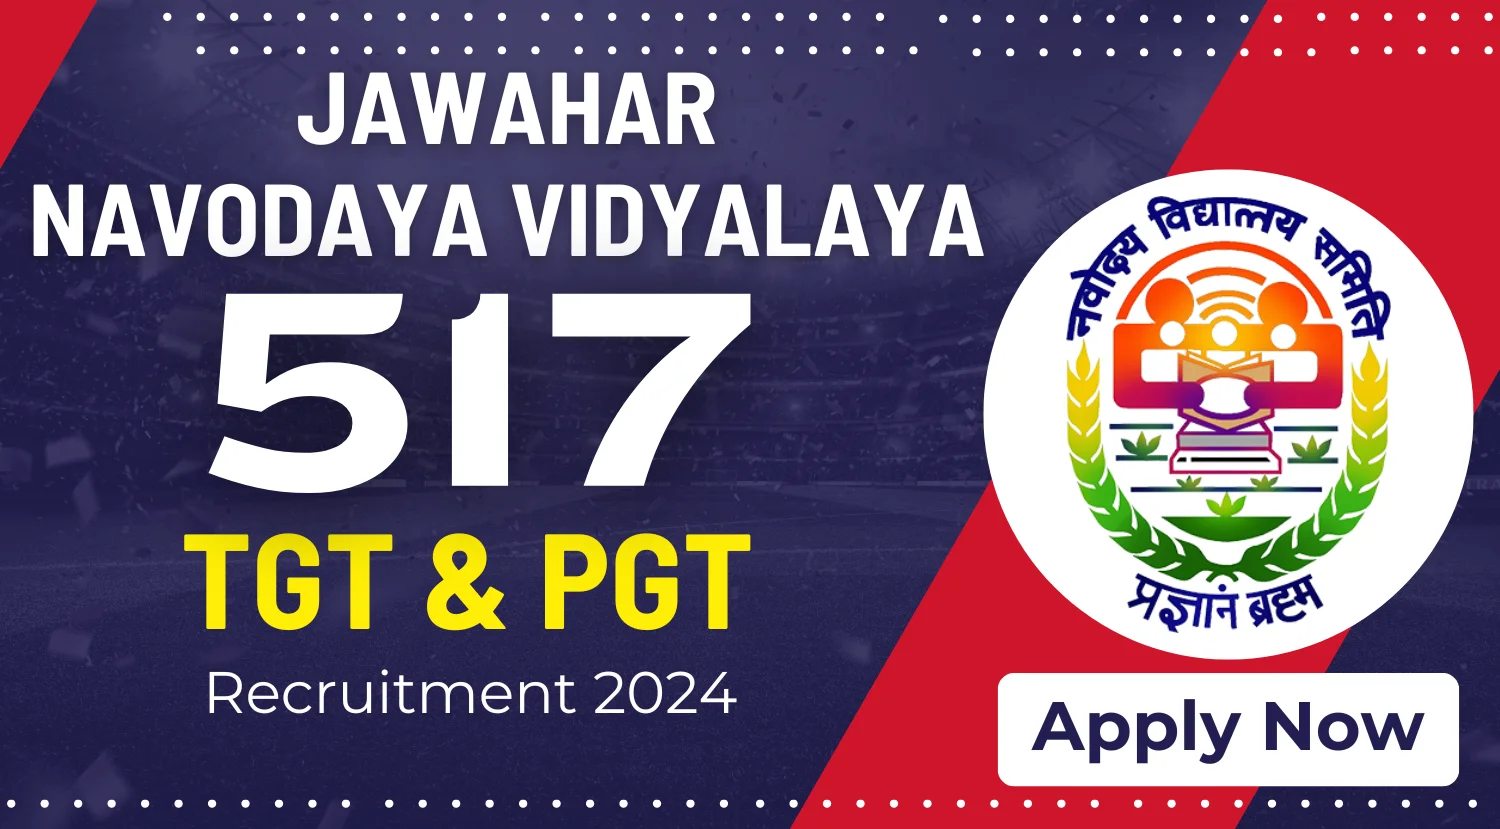 Jawahar Navodaya Vidyalaya Recruitment 2024 Notification Out for 517 TGT and PGT Posts